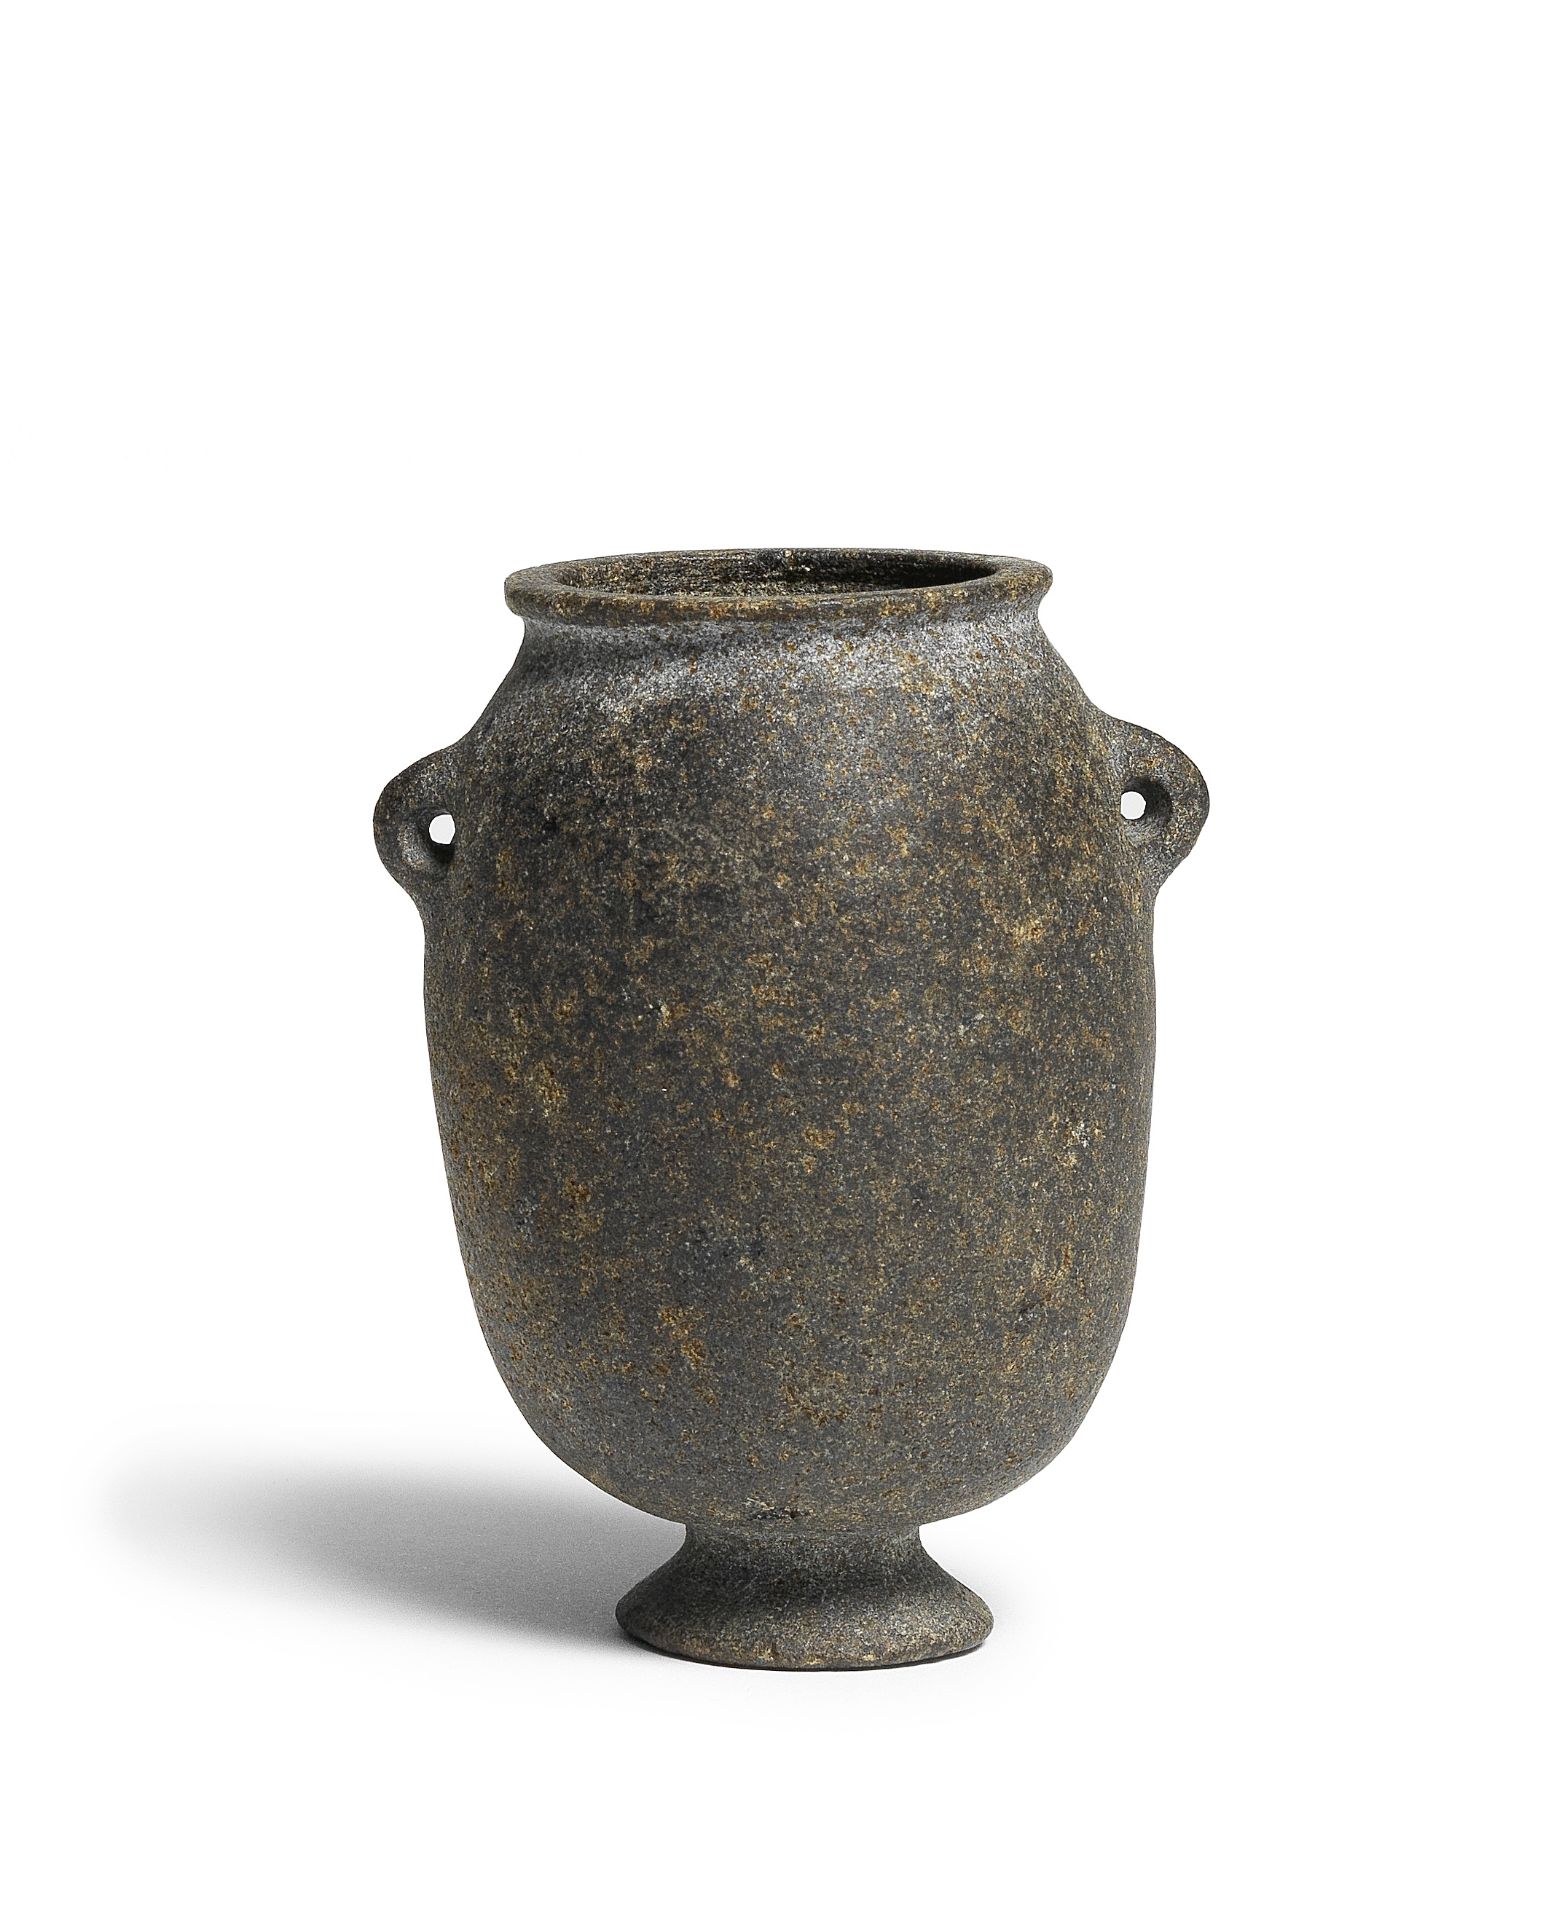 An Egyptian basalt footed jar